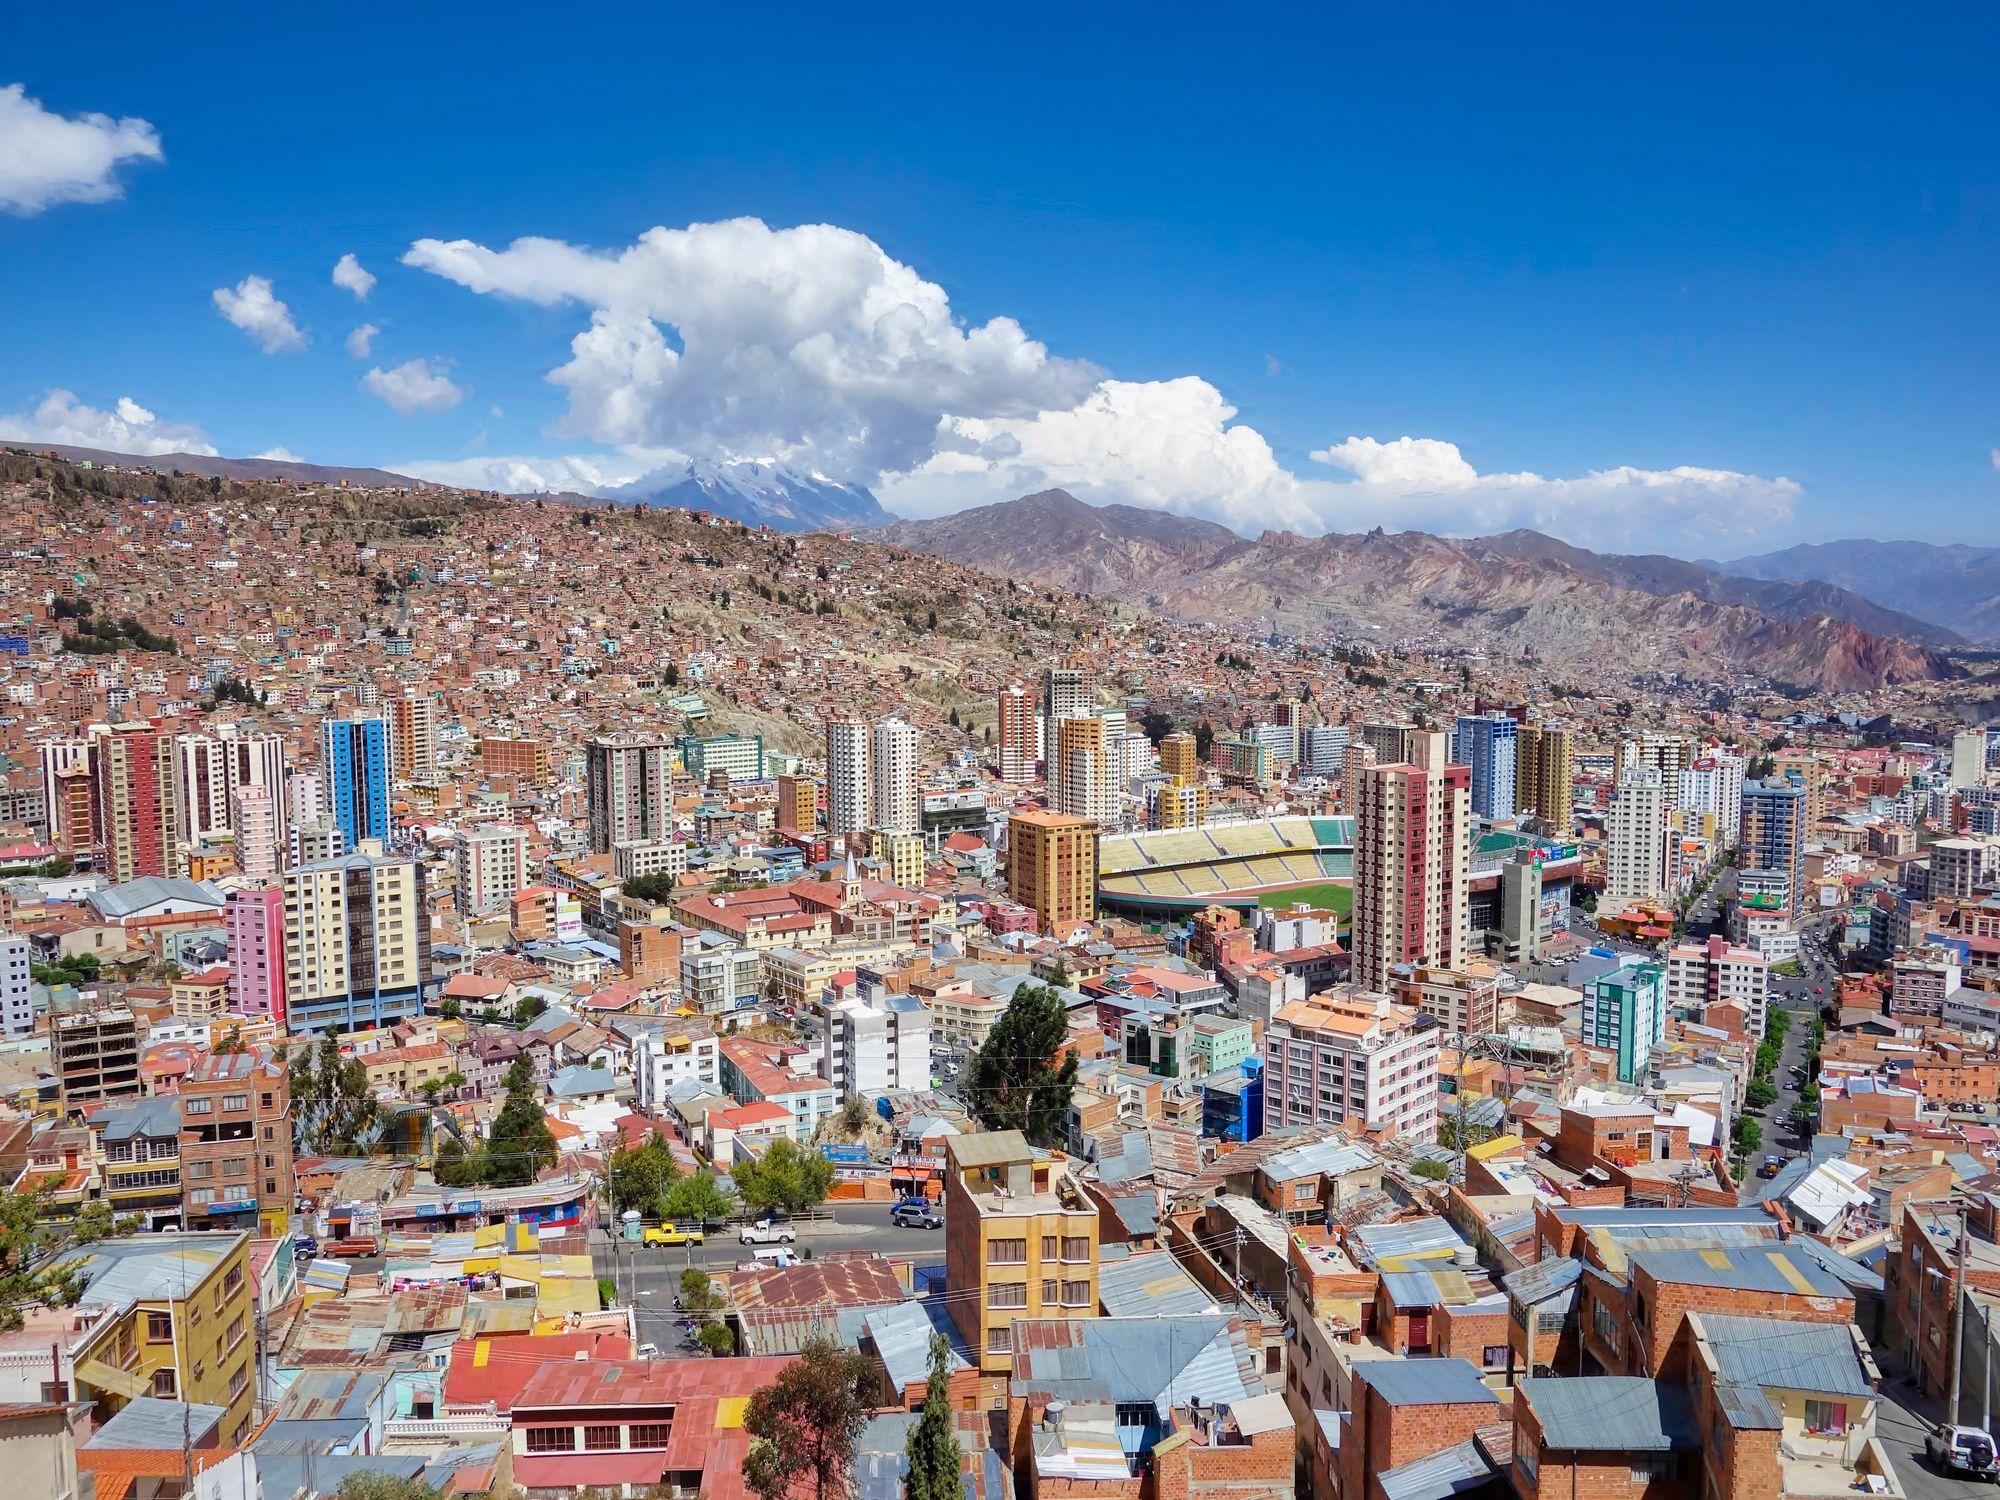 Imagem ampla da cidade de La Paz